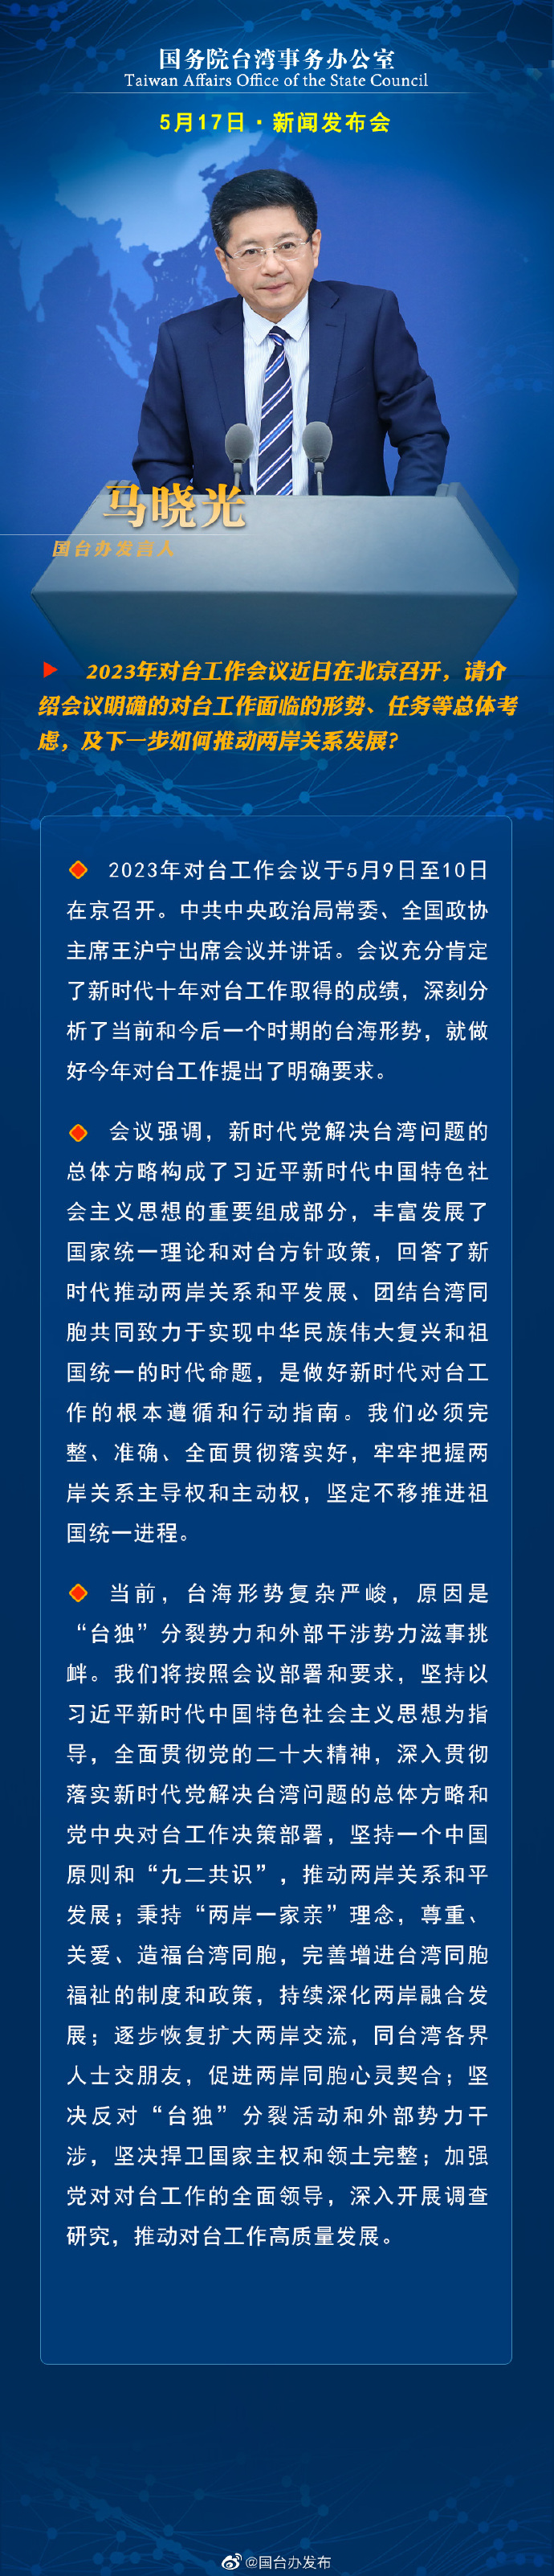 國務院台灣事務辦公室5月17日·新聞發佈會